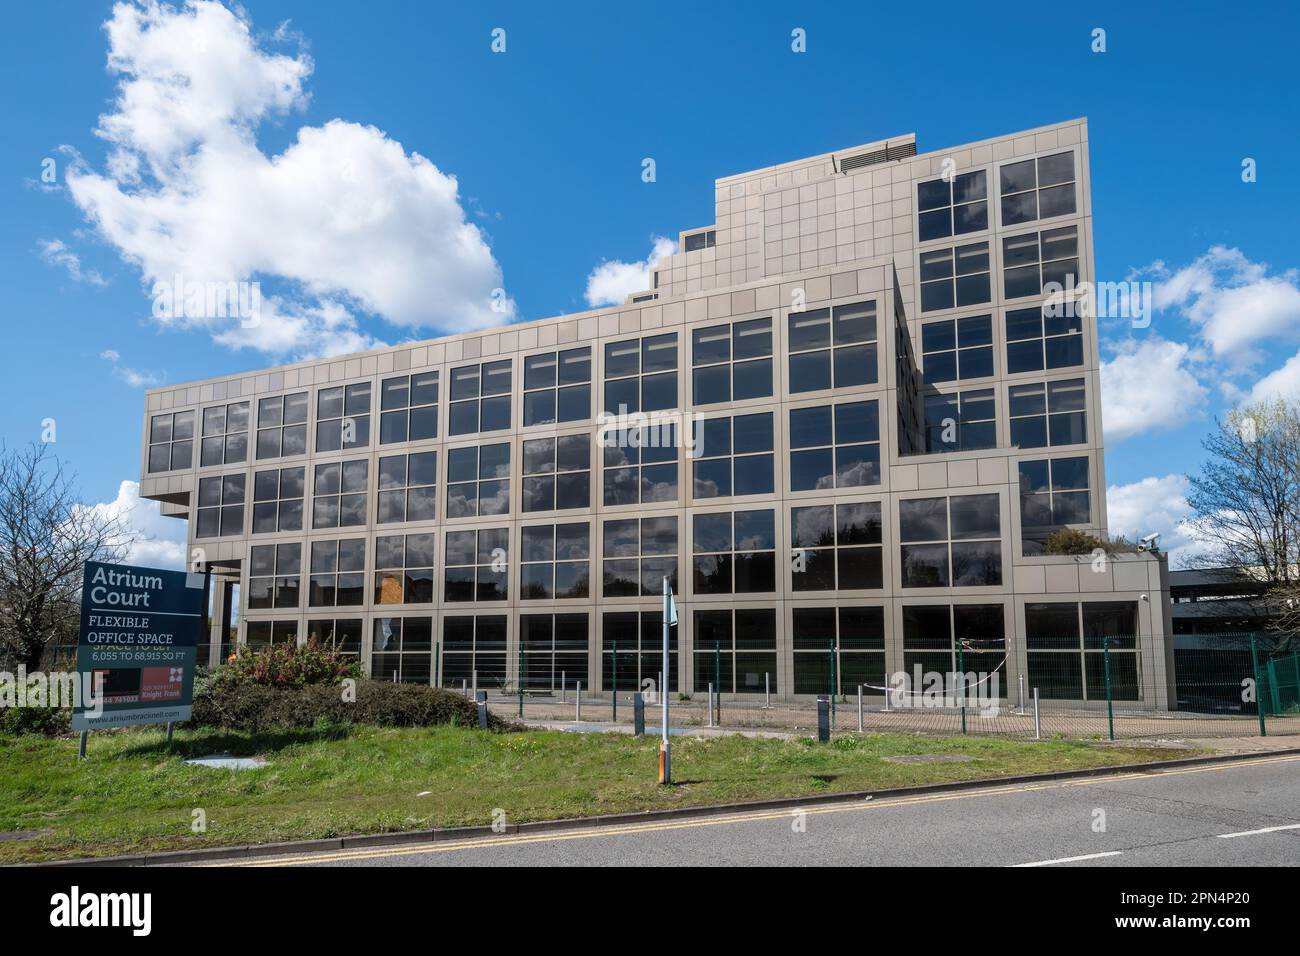 Atrium court immeuble de bureaux avec panneau publicitaire espace de bureau flexible, Bracknell Town, Berkshire, Angleterre, Royaume-Uni Banque D'Images